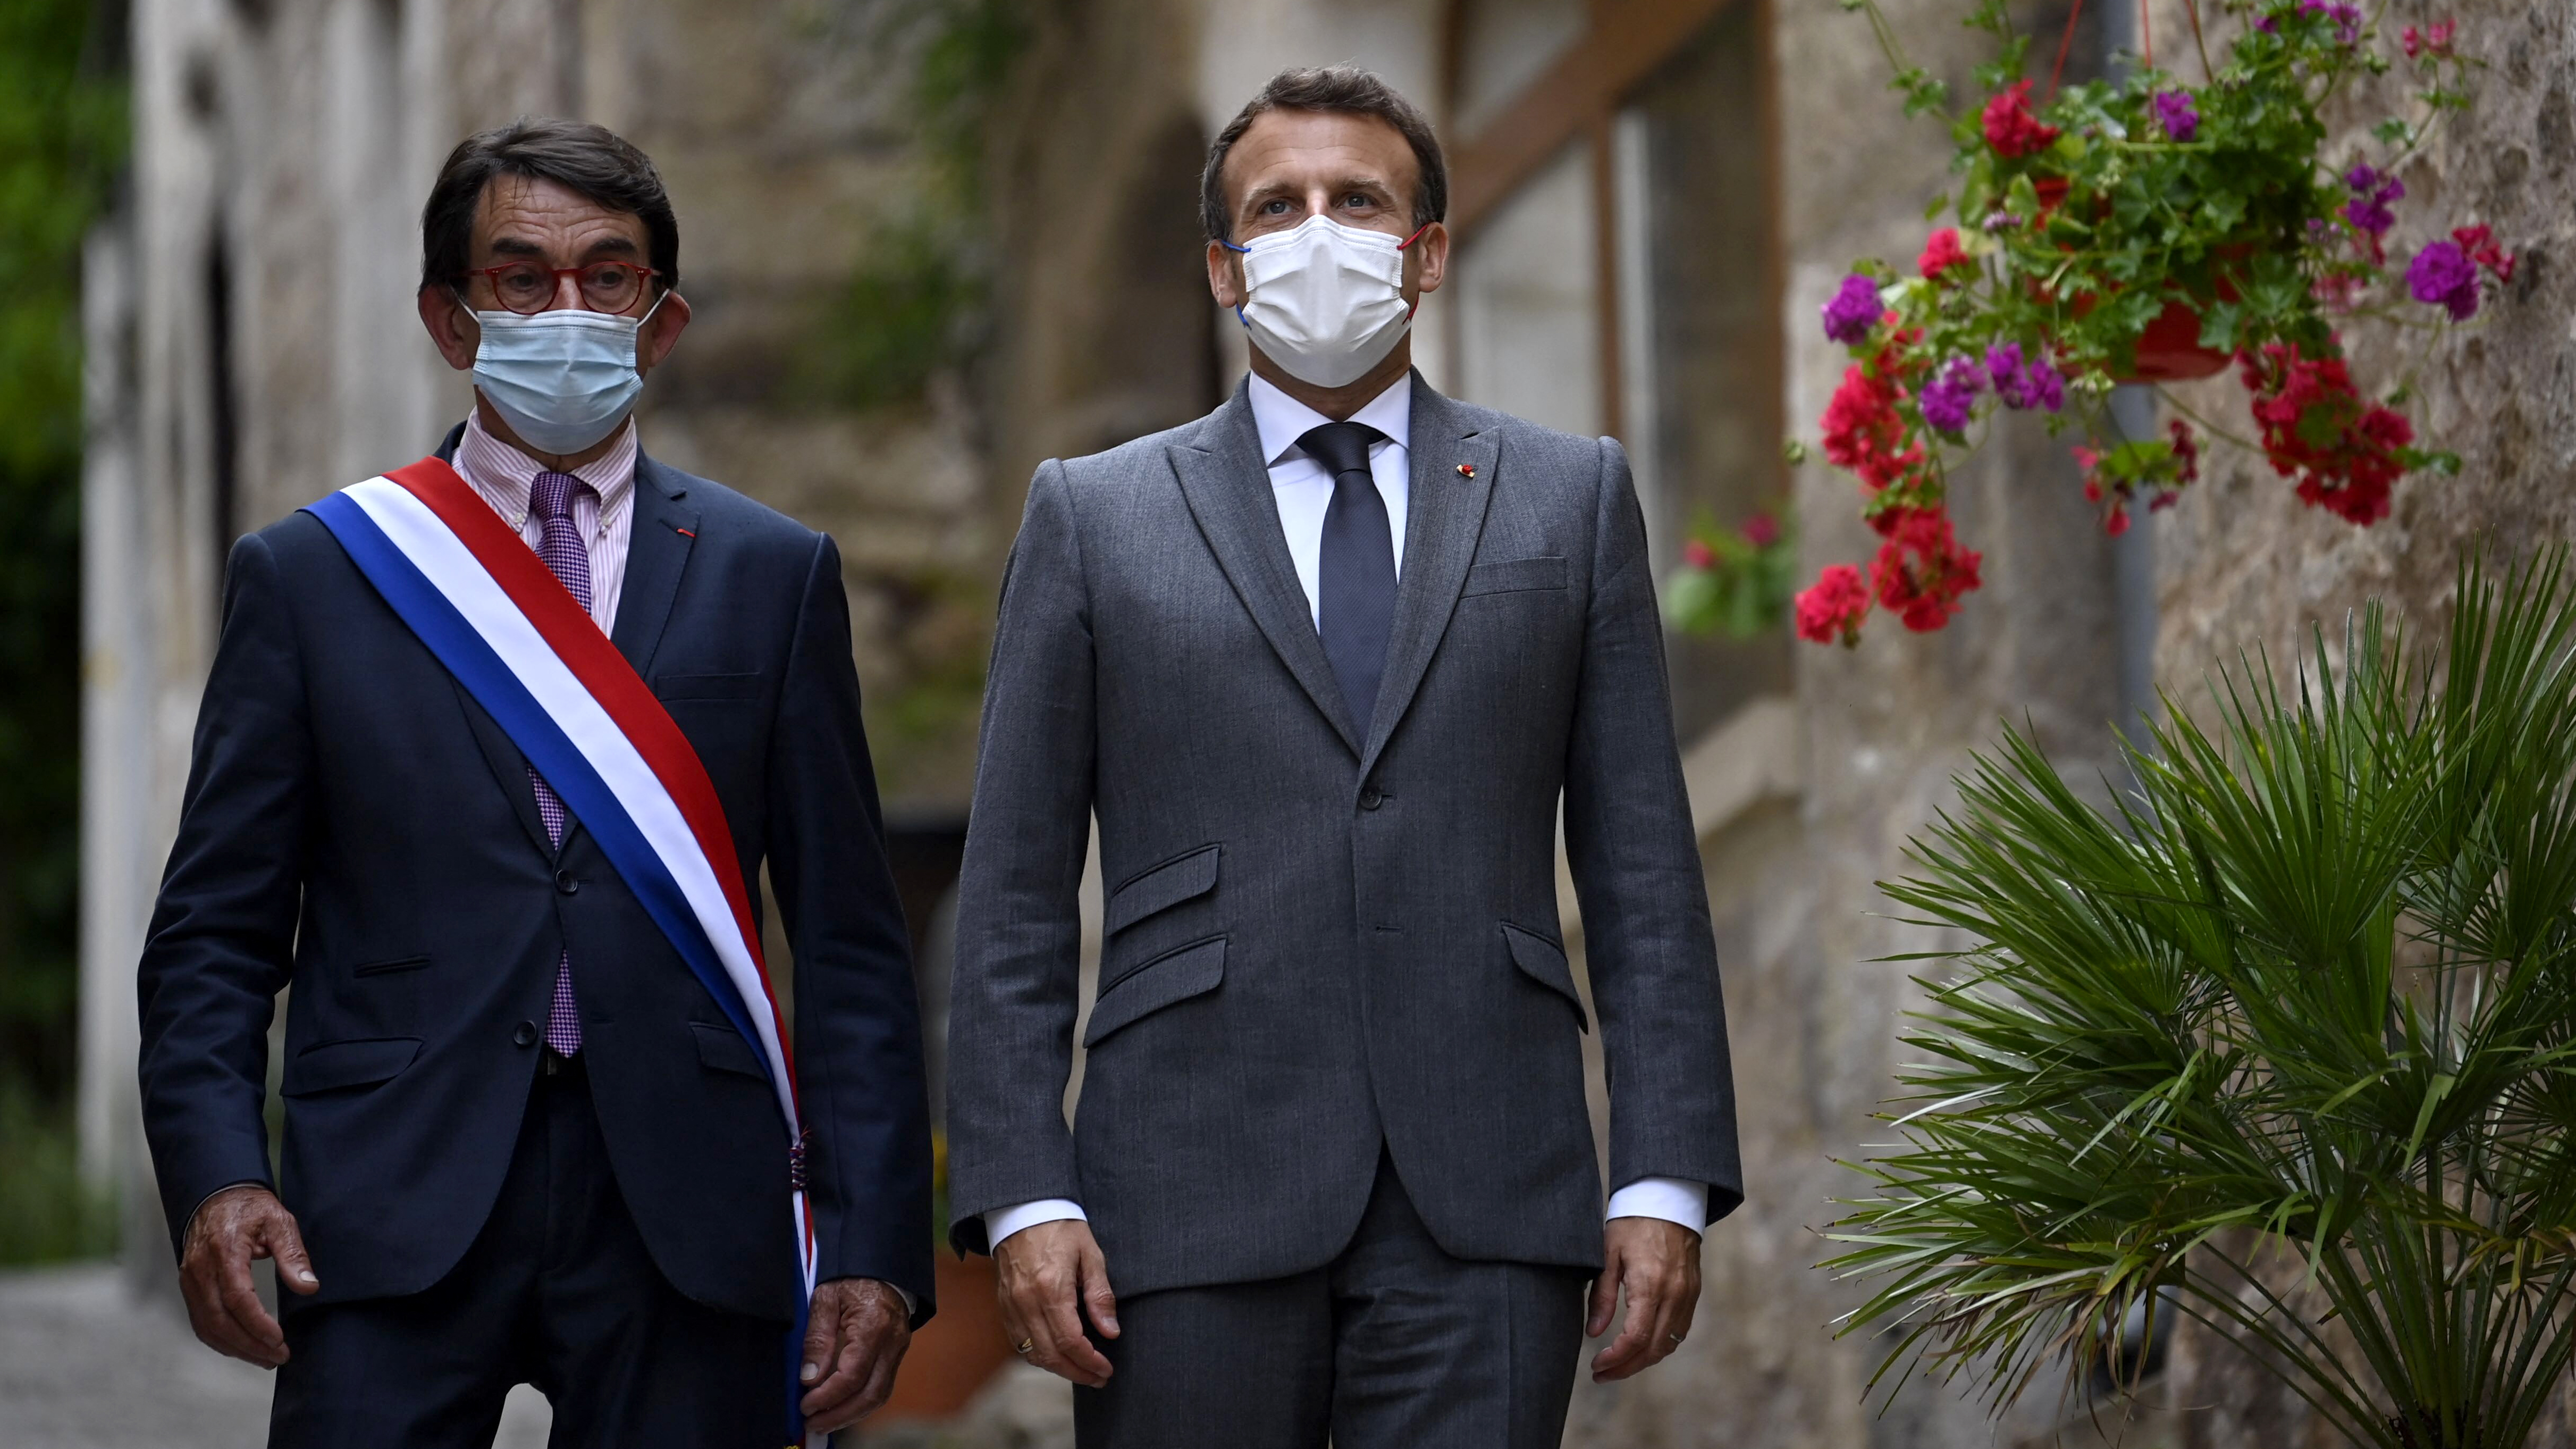 Le président Emmanuel Macron et le maire de Saint-Cirq-Lapopie Gérard Miquel marchent dans les rues du village, près de Cahors, le 2 juin 2021.